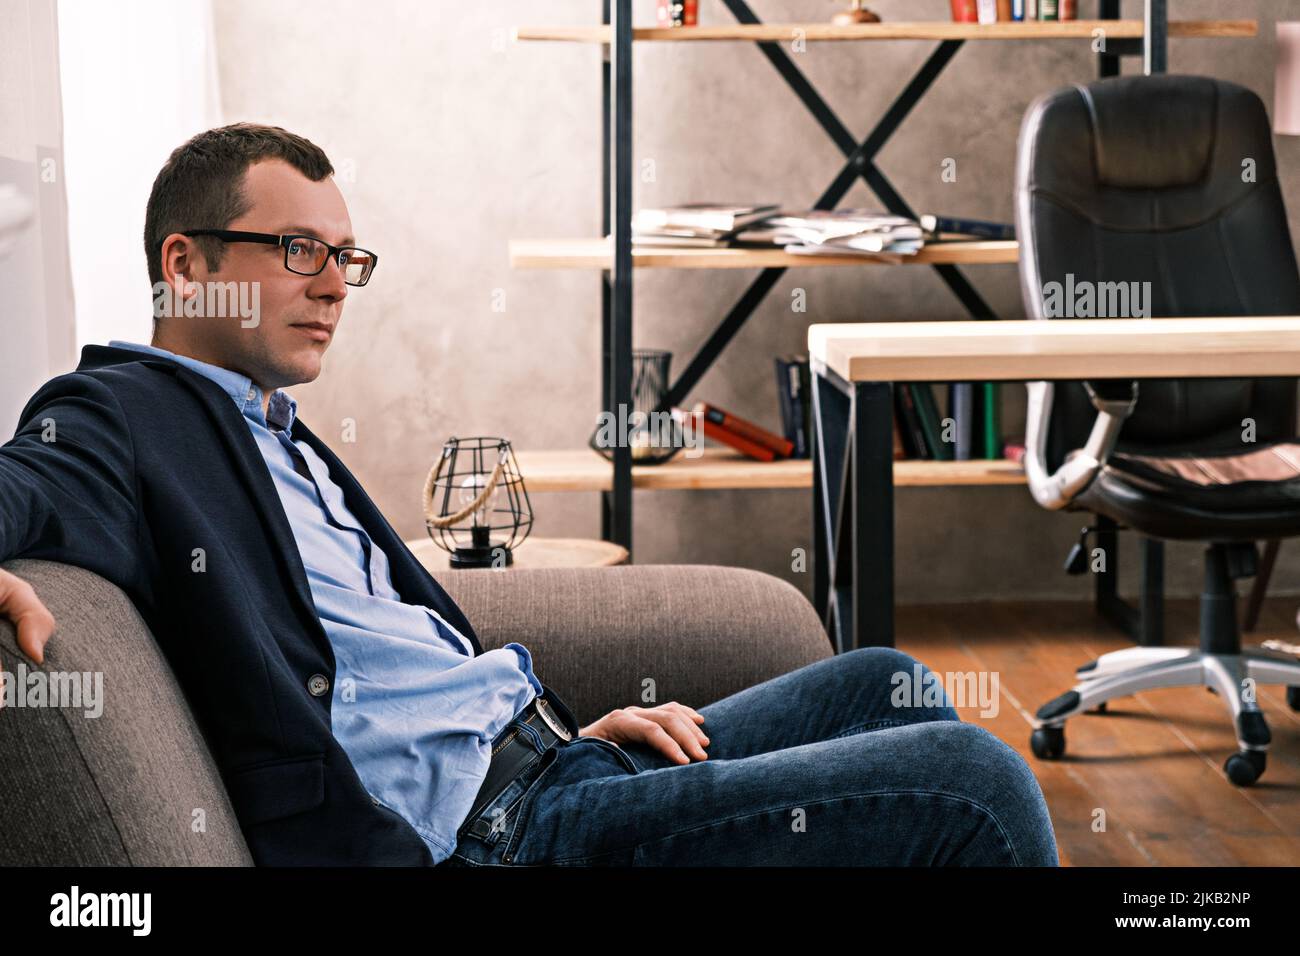 Portrait Seitenansicht des kaukasischen Mannes in Jacke und Brille, der auf dem Sofa sitzt und vor dem Hintergrund eines Fensters und von Regalen mit Dokumenten blickt Stockfoto